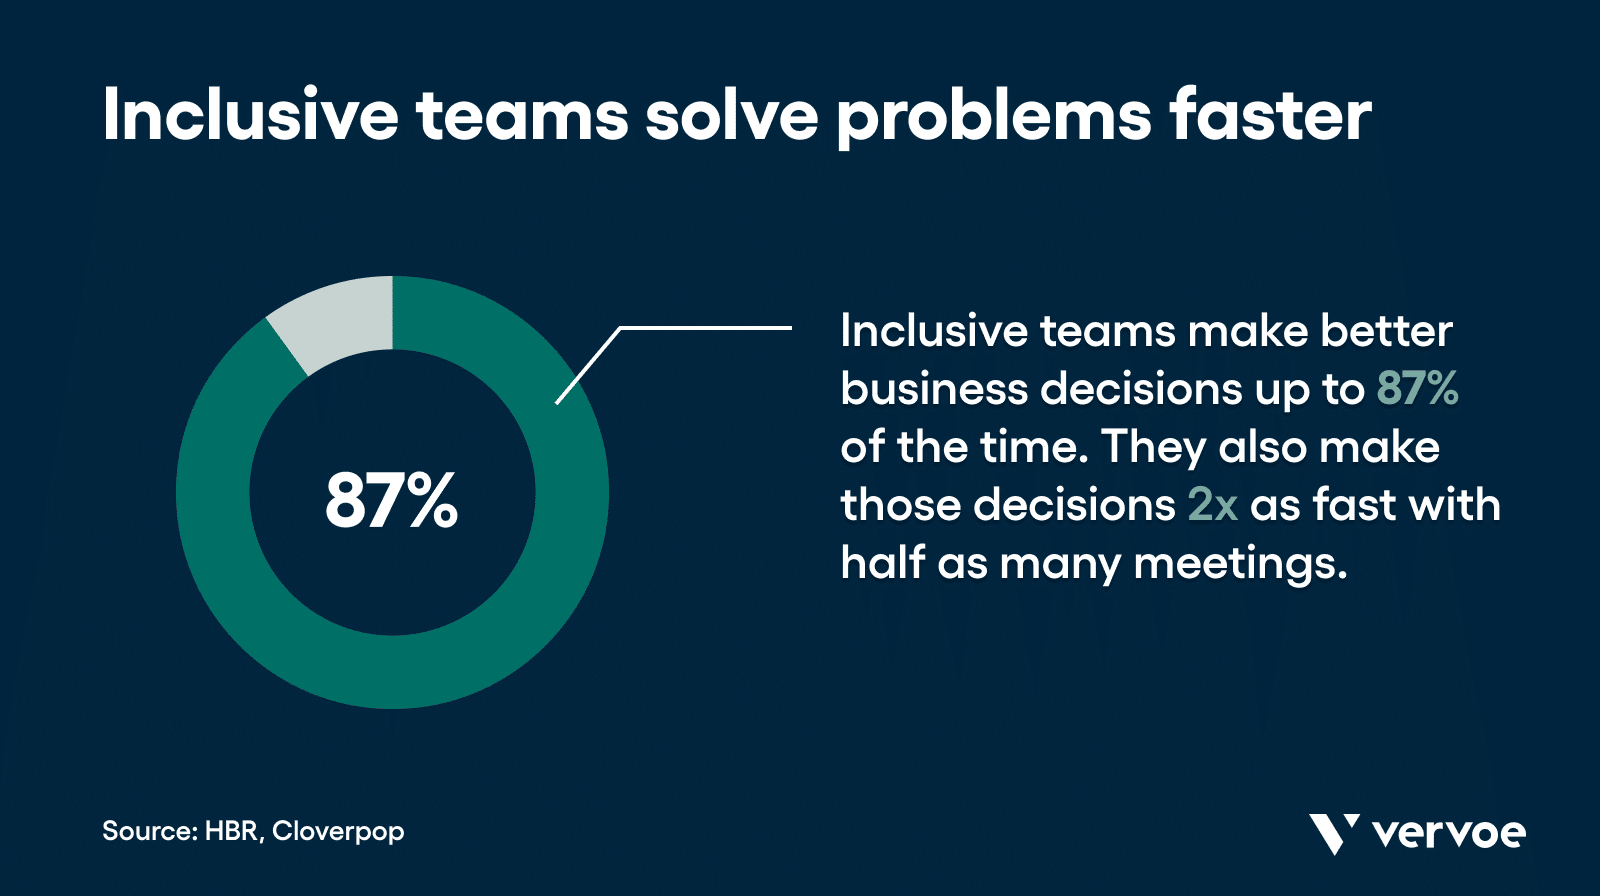 包容性团队能更快地解决问题